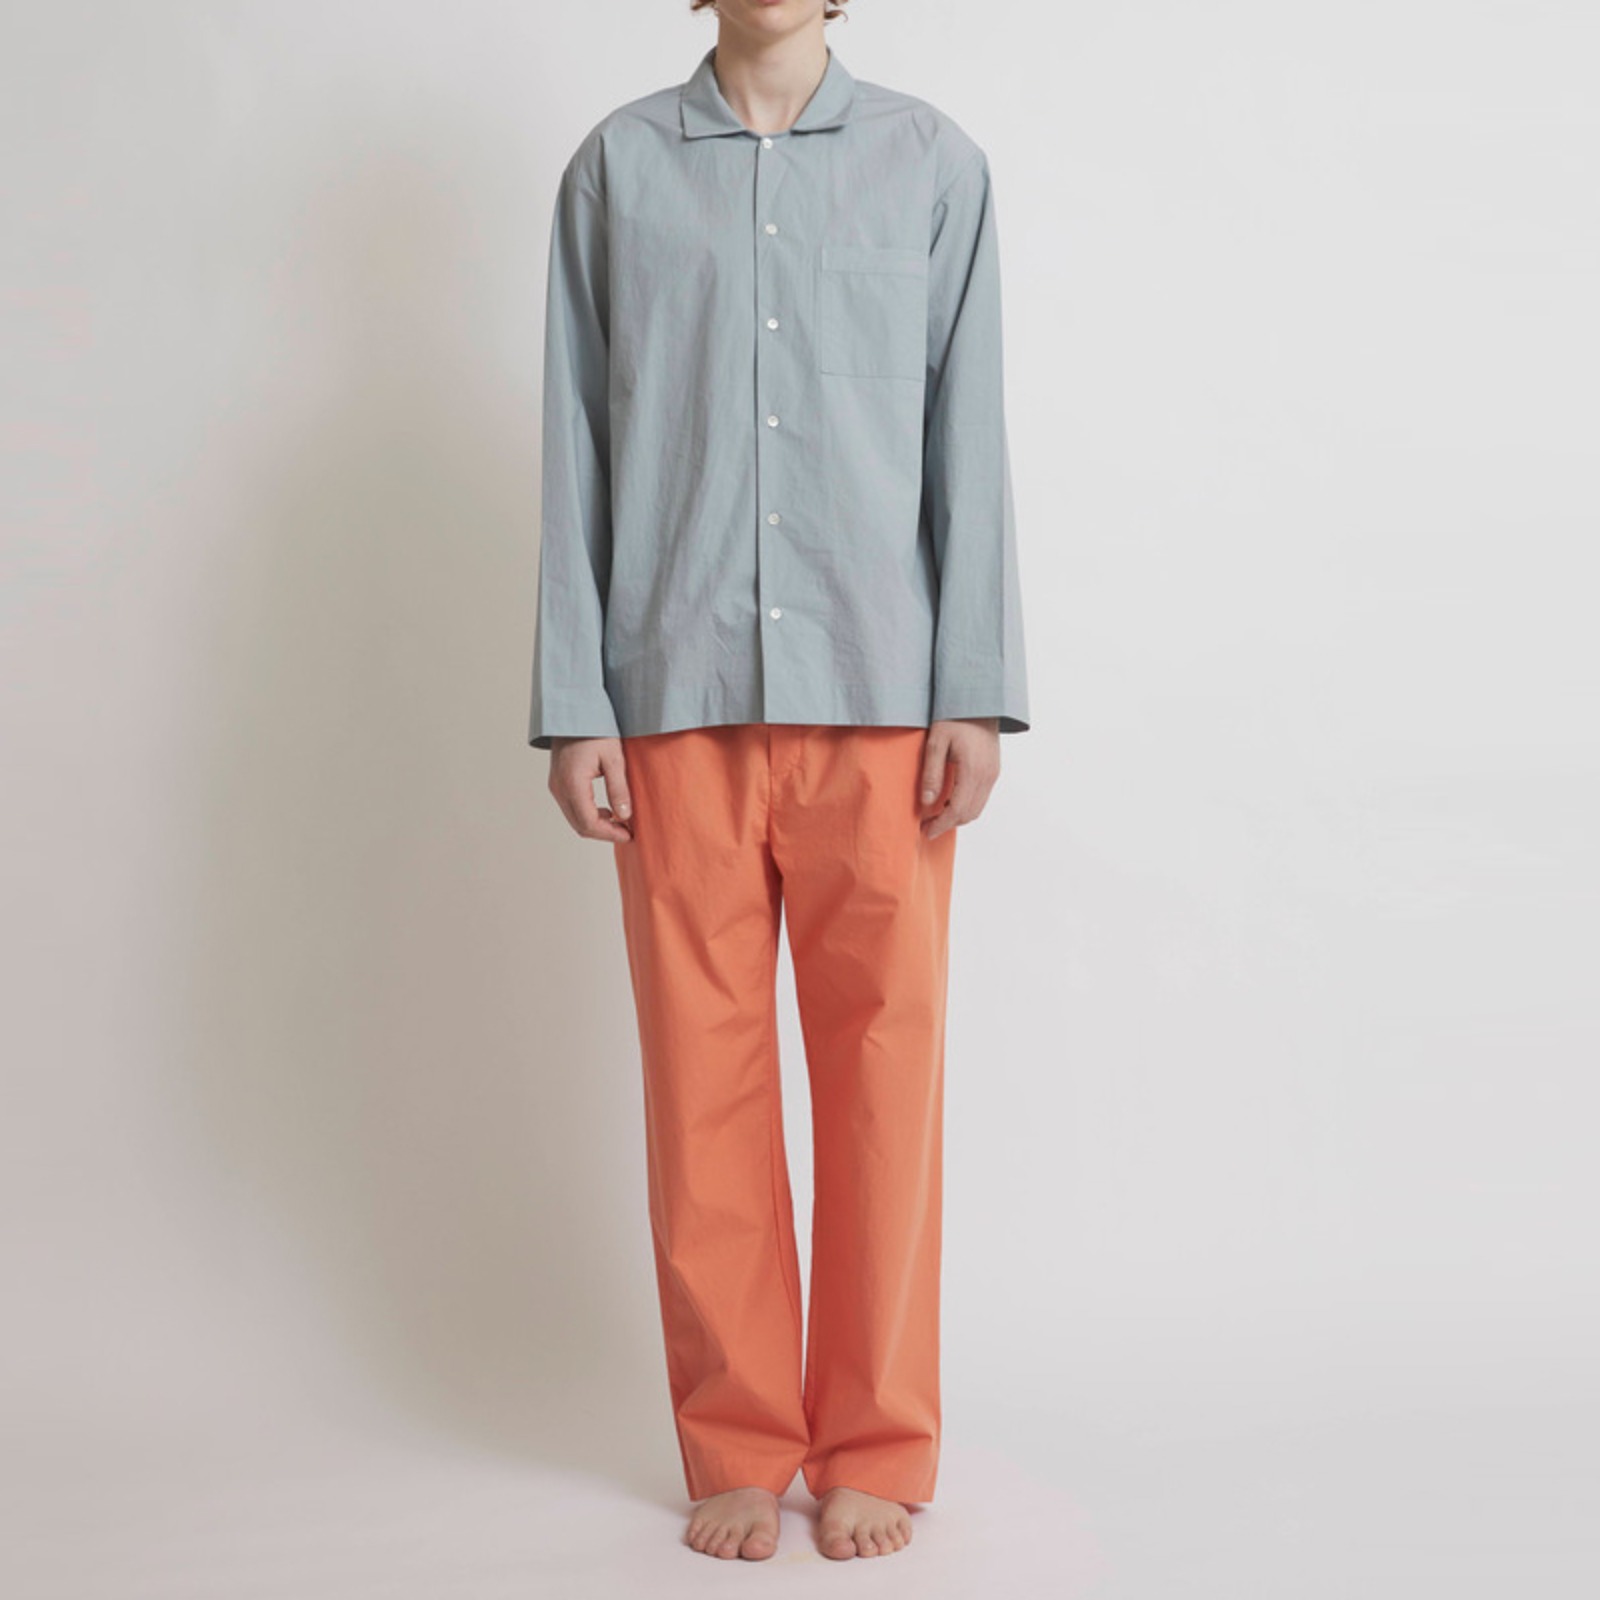 챕터원,[Spring fabric collection, 20%] 파자마 세트 - 민트/오렌지 (남녀공용) | 긴팔/긴바지